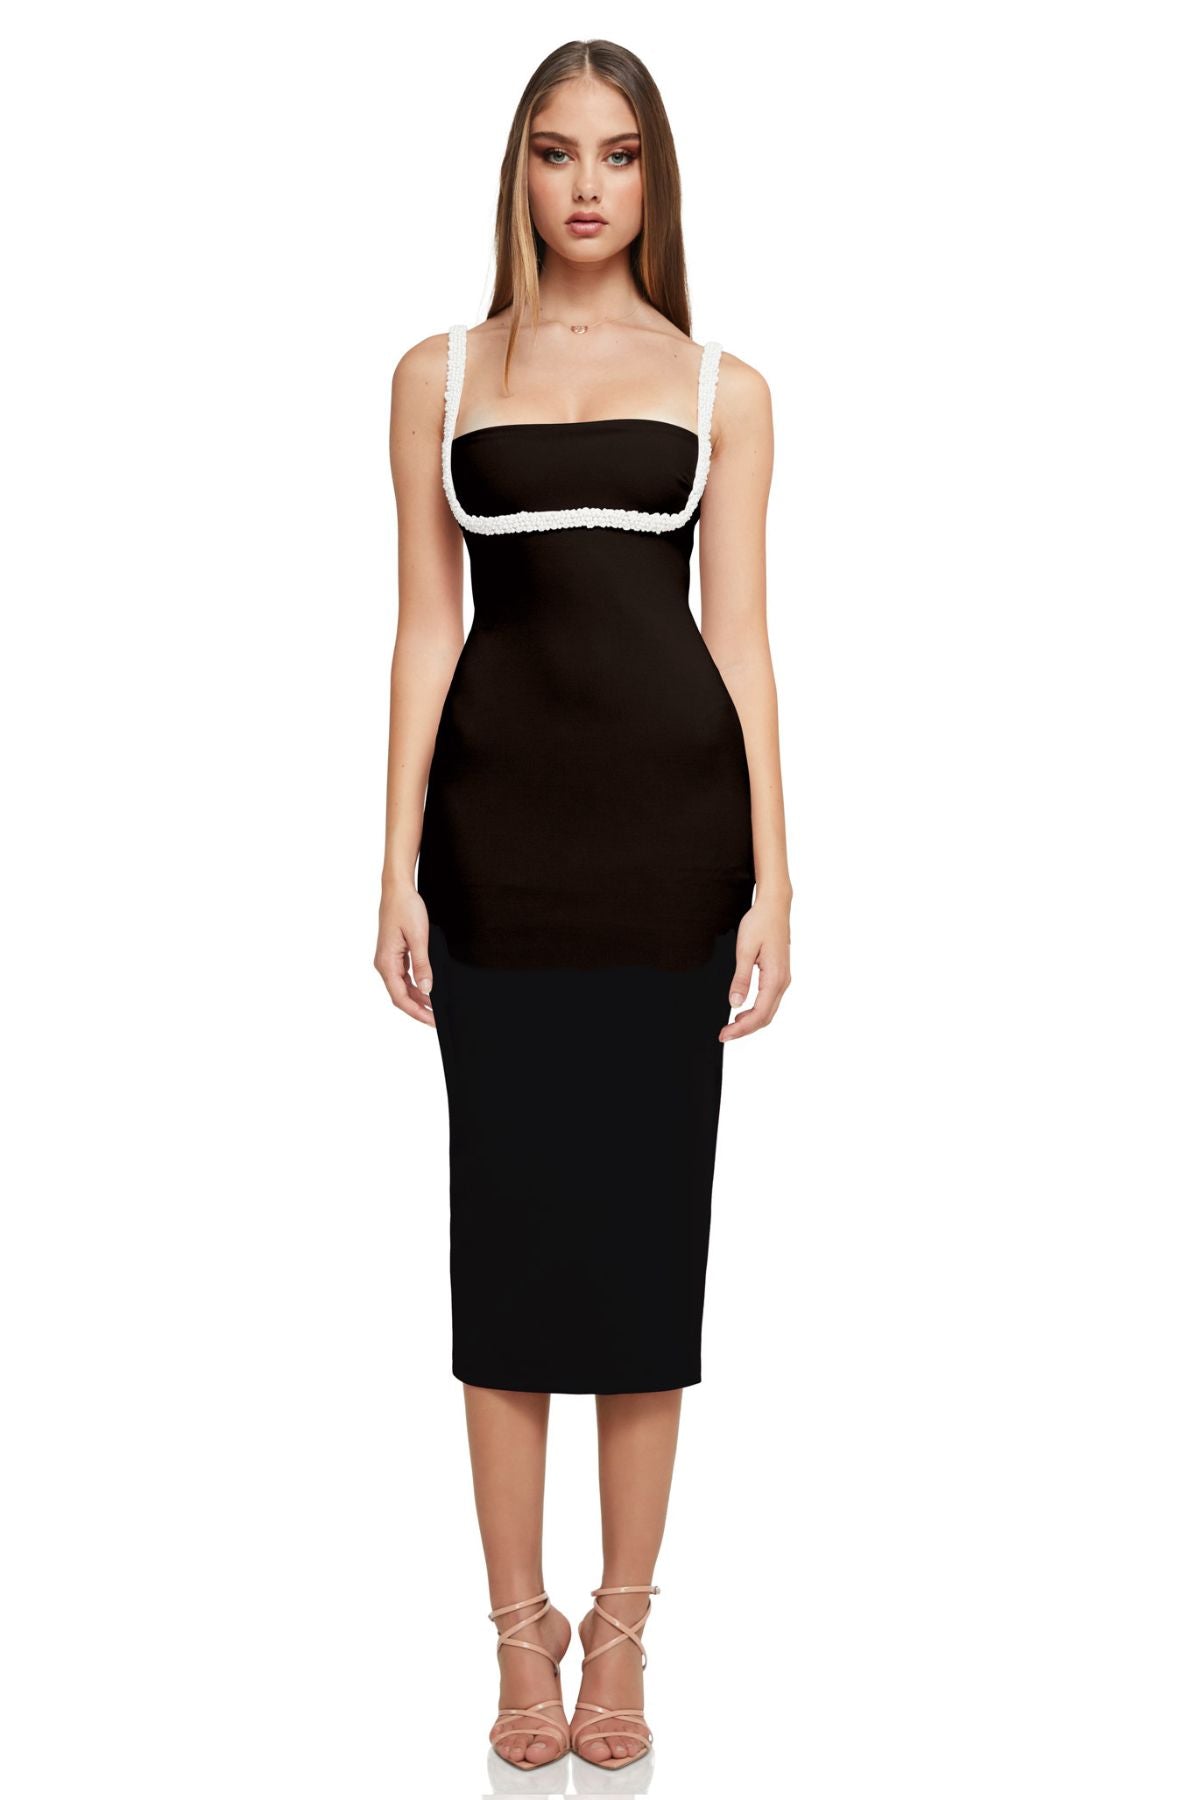 Nookie NOOKIE Nouveau Midi Dress (Black) - RRP $349 - 1_99d35795-a718-4aff-a019-f65940caf5d6.jpg